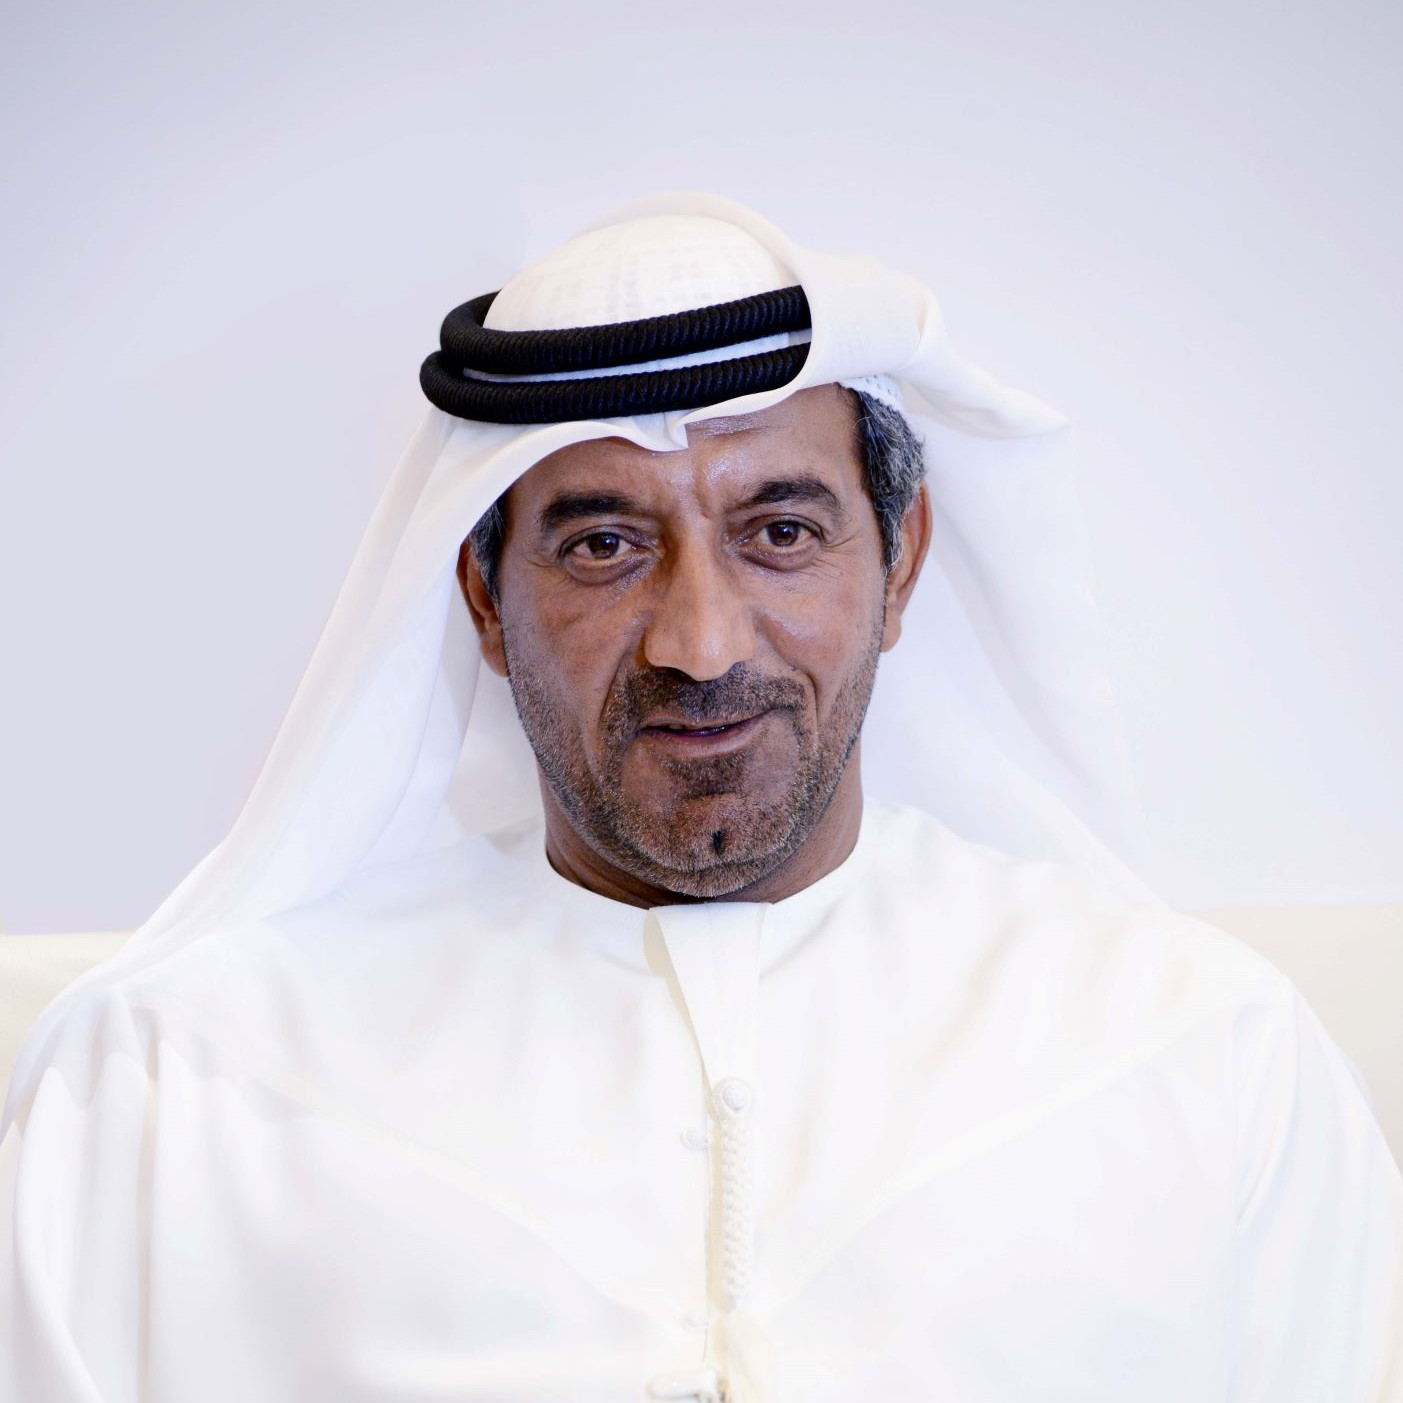 阿联酋航空公司及集团主席兼首席执行官谢赫·阿姆德·本·萨伊德·阿尔马克托姆殿下.jpg